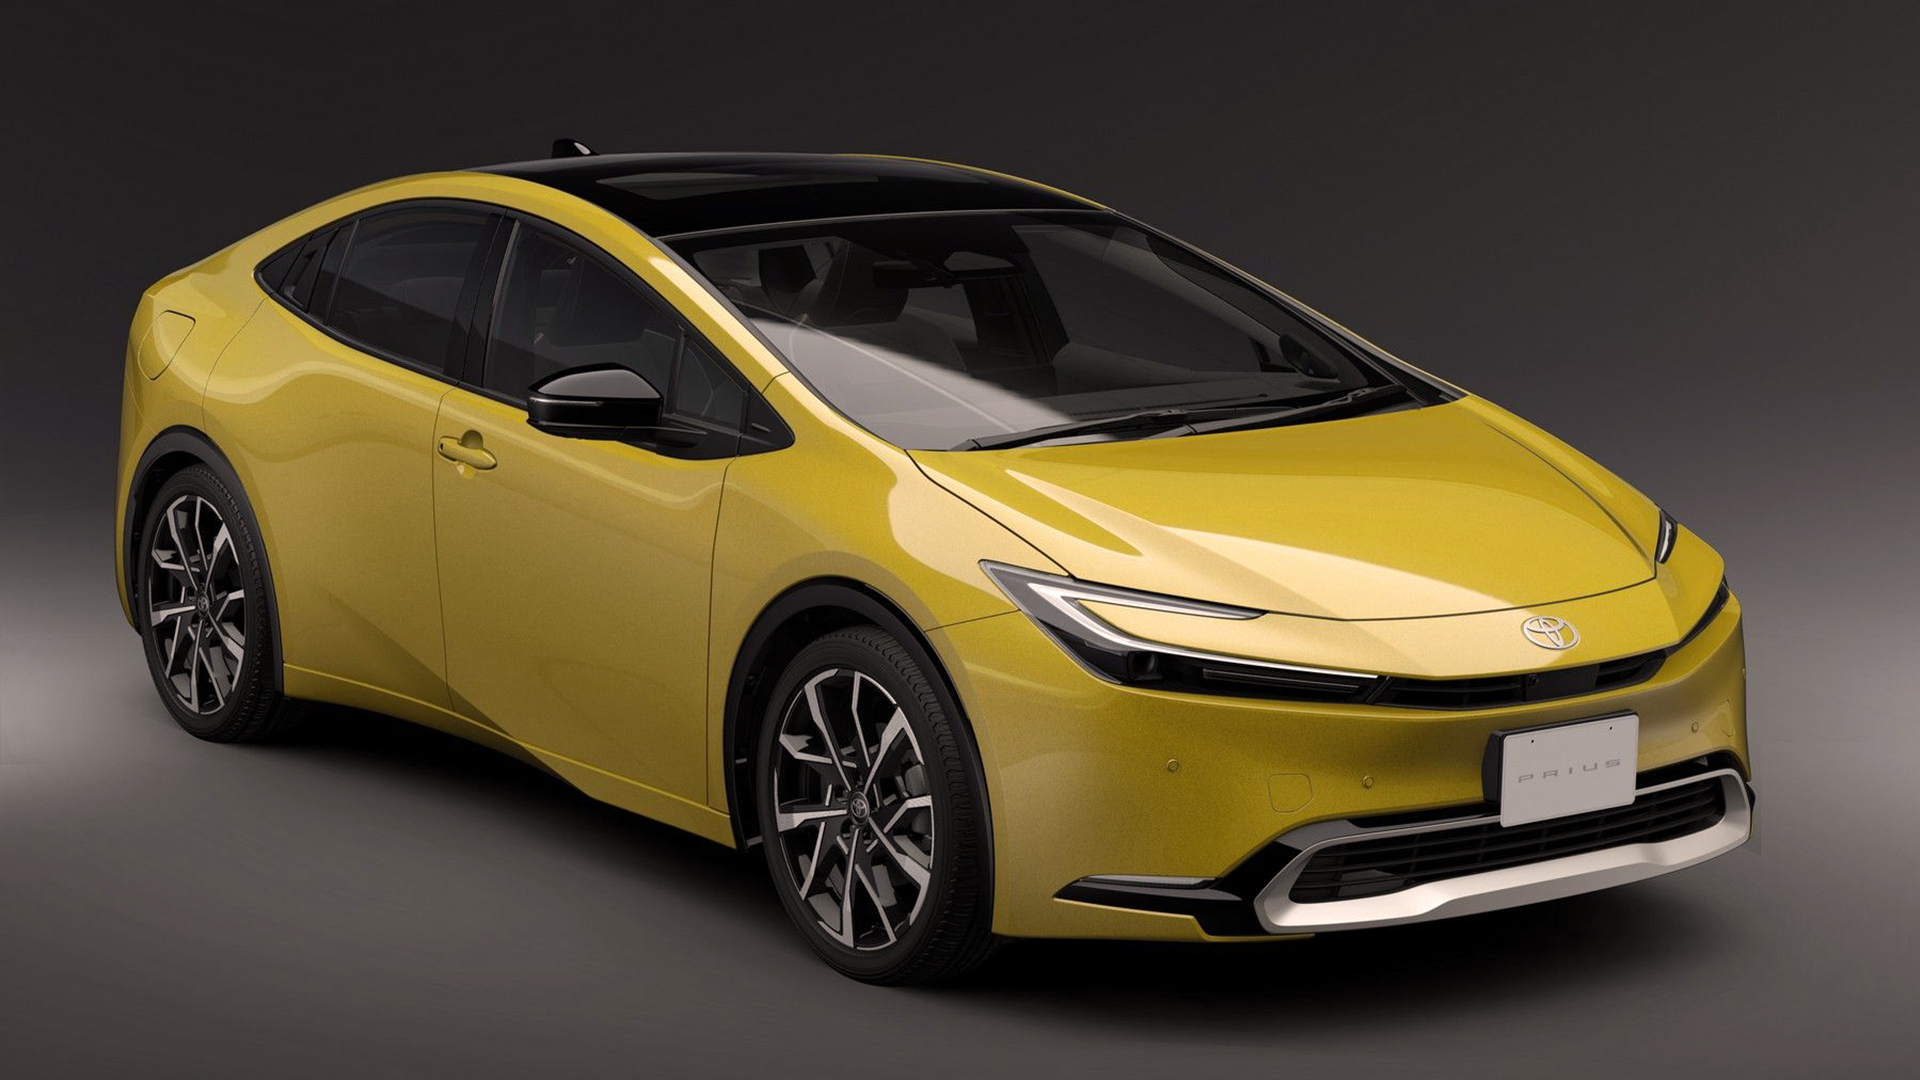 Formas completamente nuevas para el Toyota Prius de 5ta generación, que deja su diseño disruptivo para competir mano a mano con los híbridos enchufables del mercado